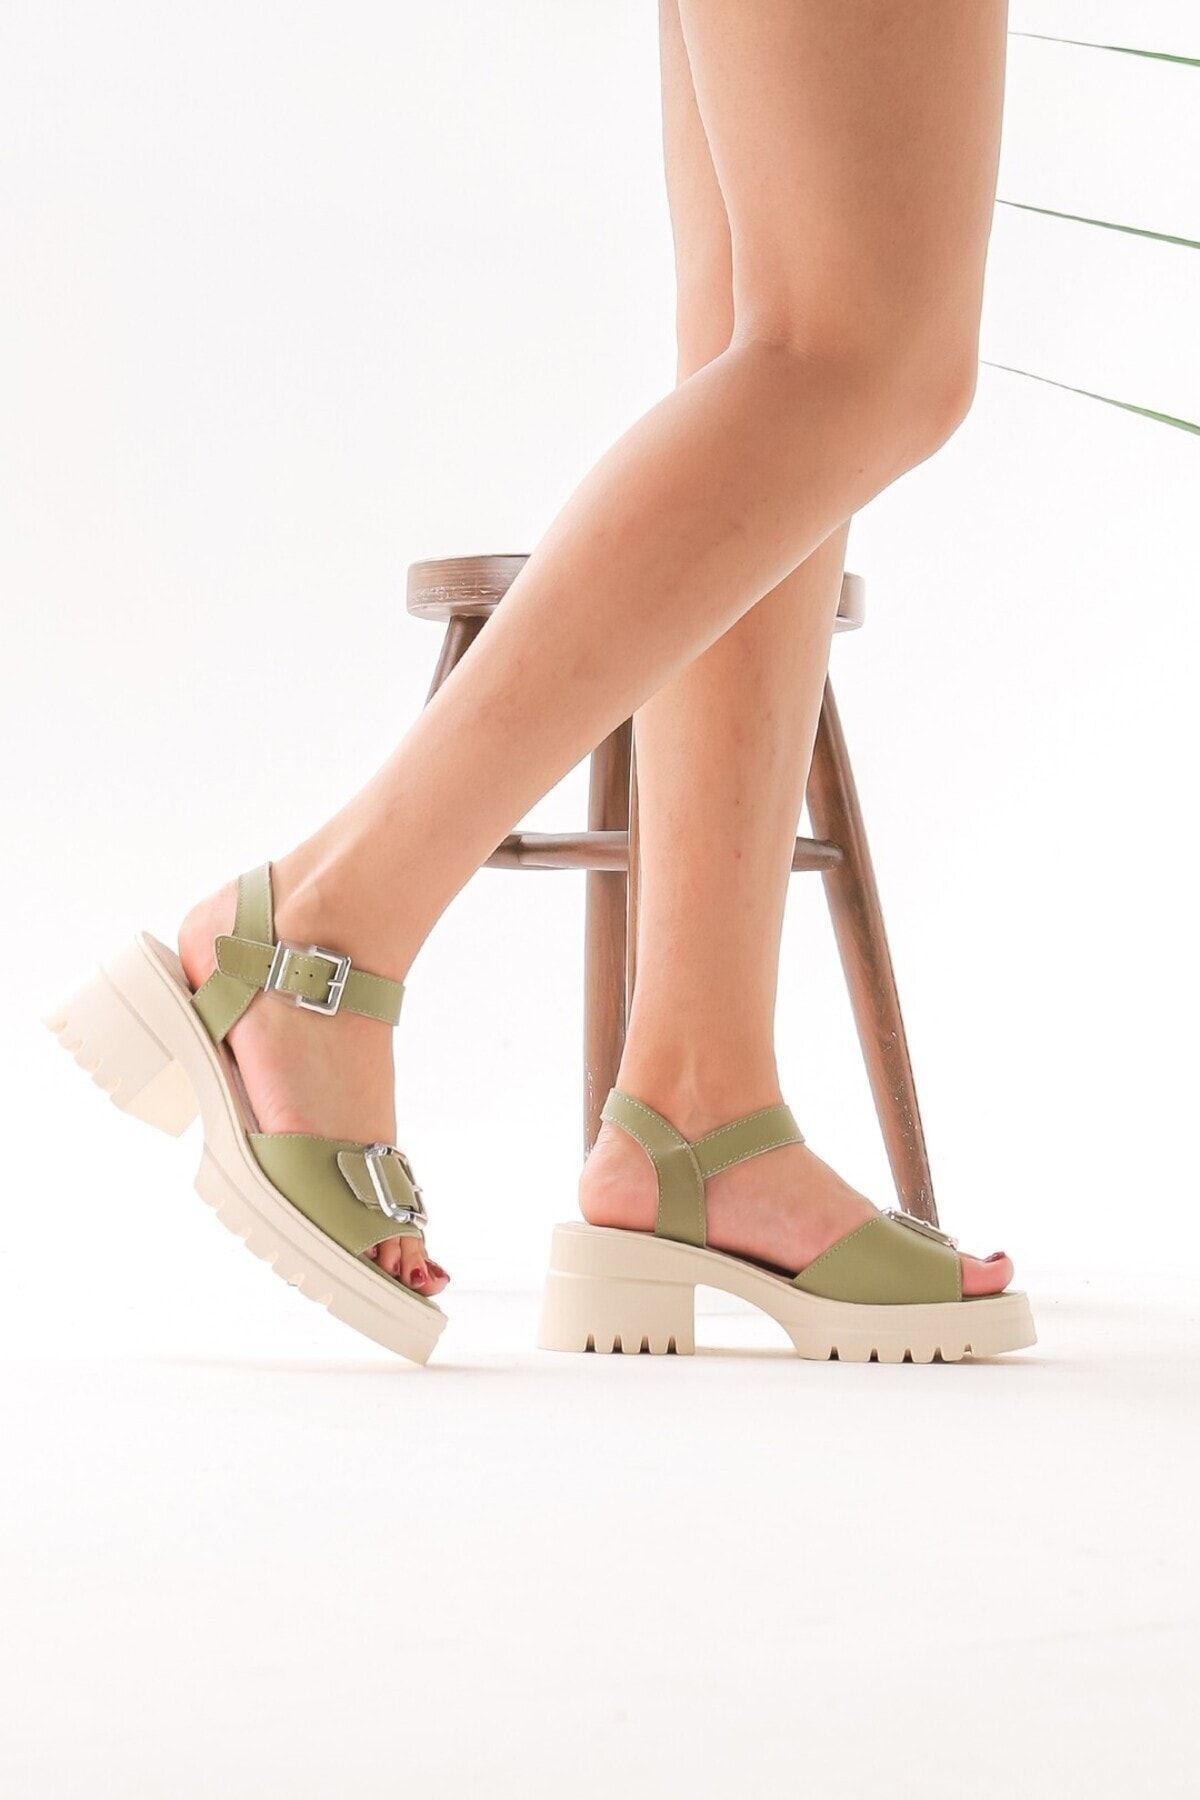 Cooliza Hakiki Deri Kemer Tokalı Rahat Şık Tarz Yeşil Yazlık Kadın Sandalet